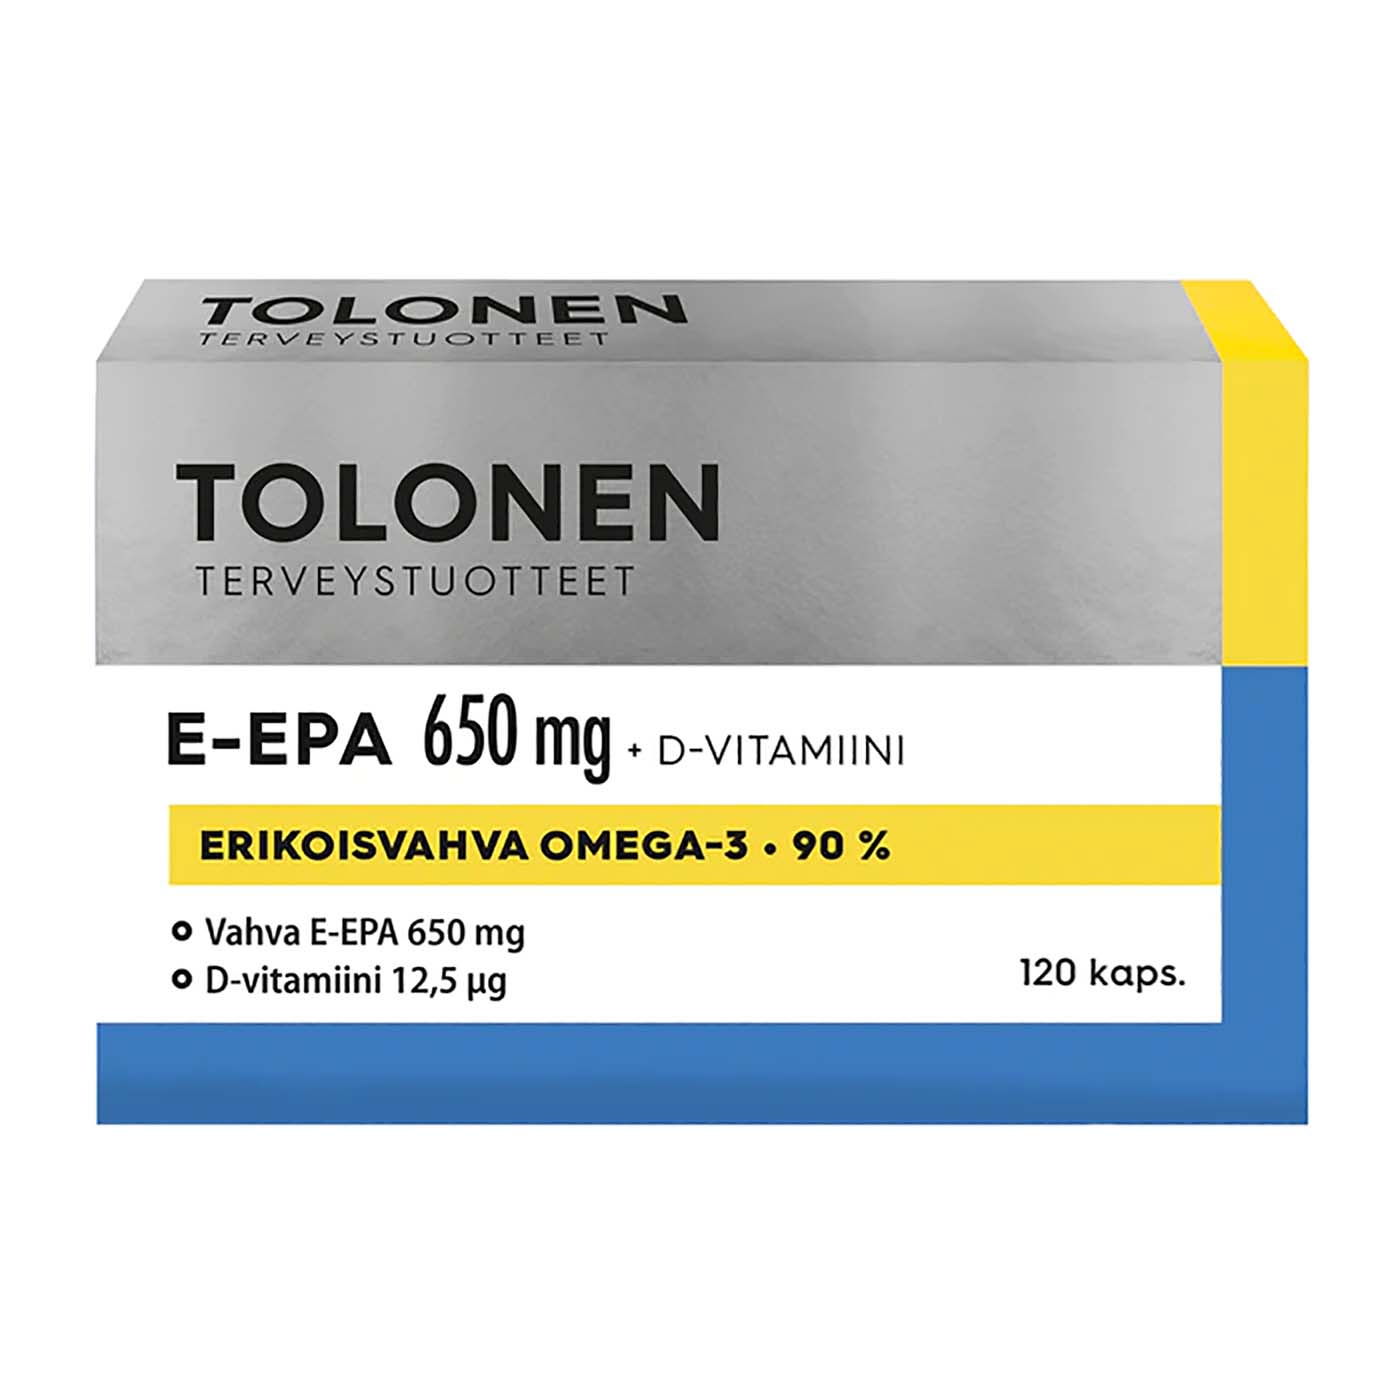 Tolonen E-EPA supplement